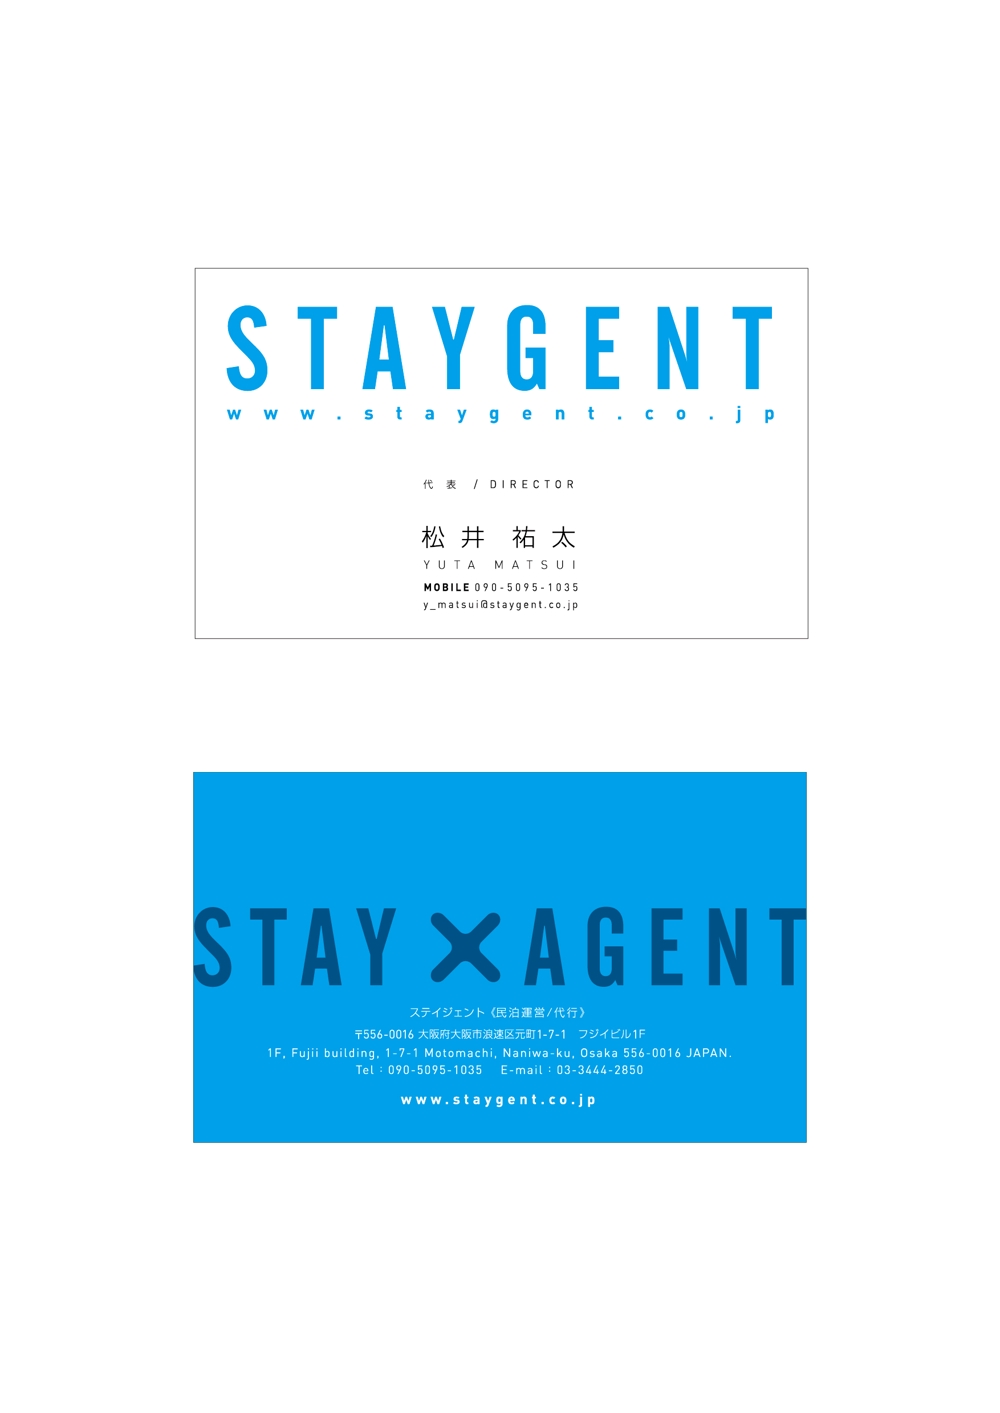 民泊運営会社「Staygent」の名刺デザイン